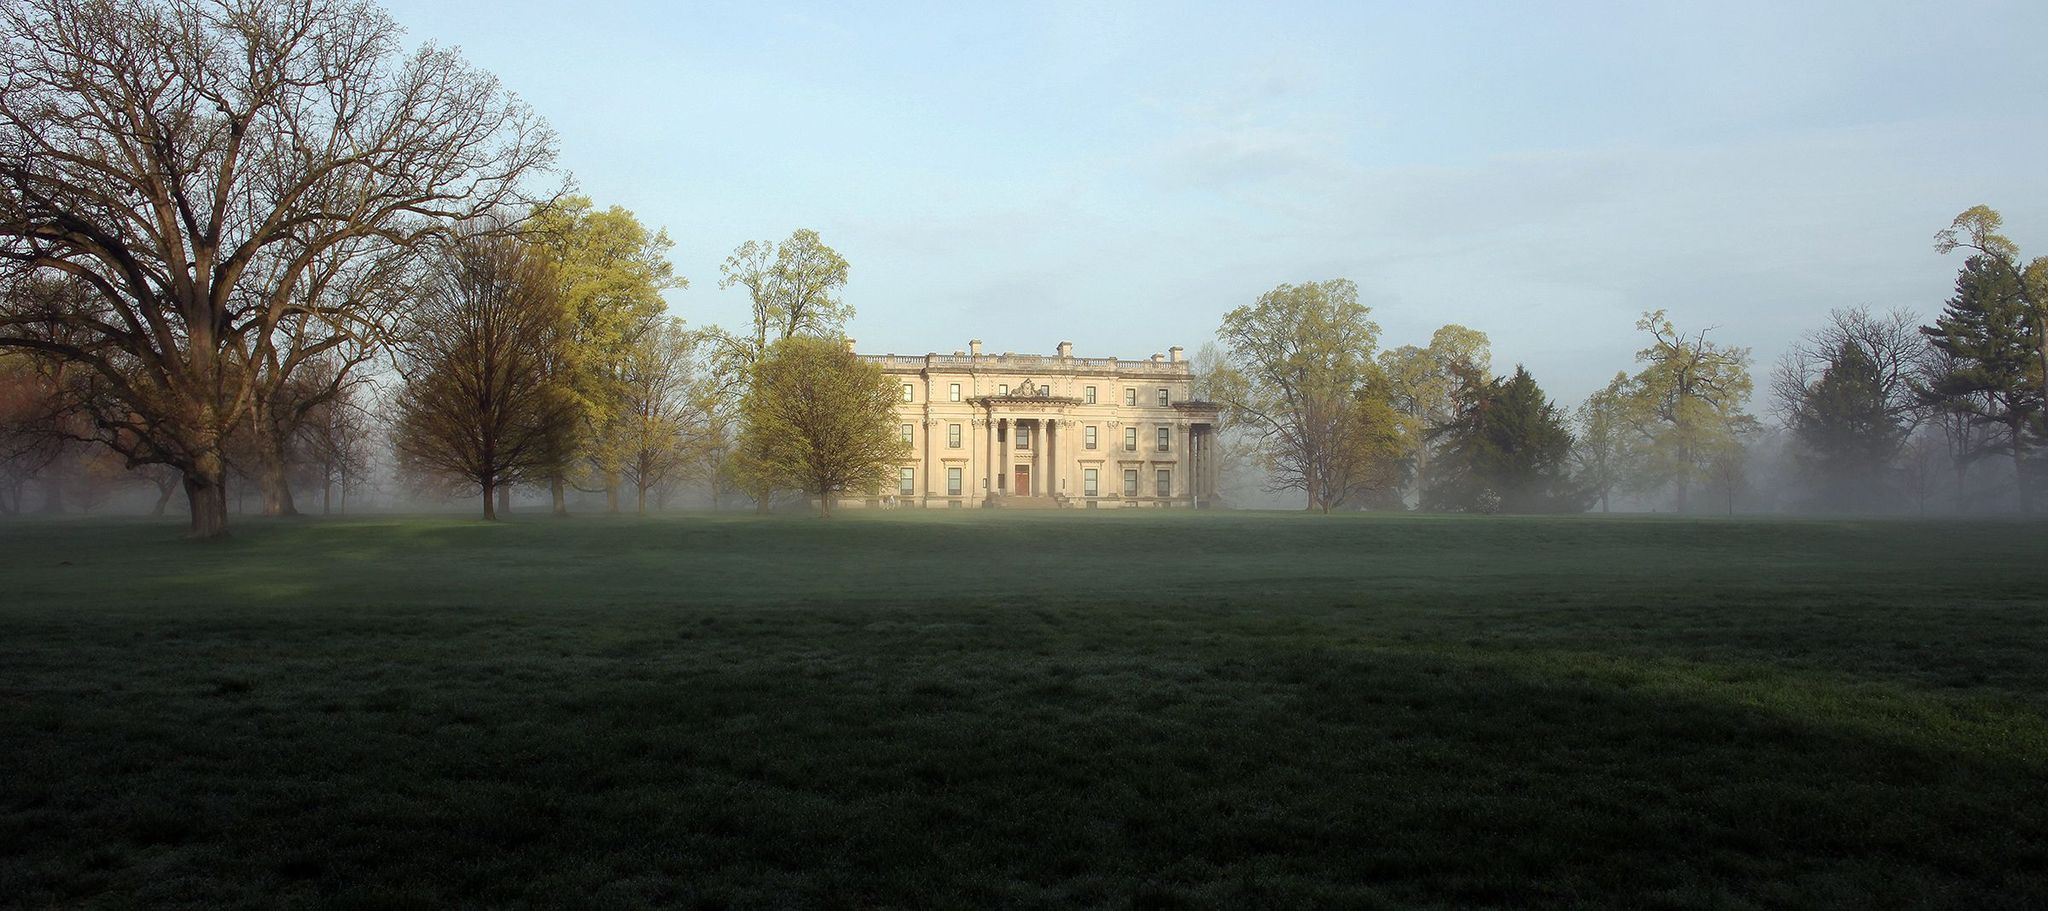 A misty Spring morning at the Vanderbilt Mansion